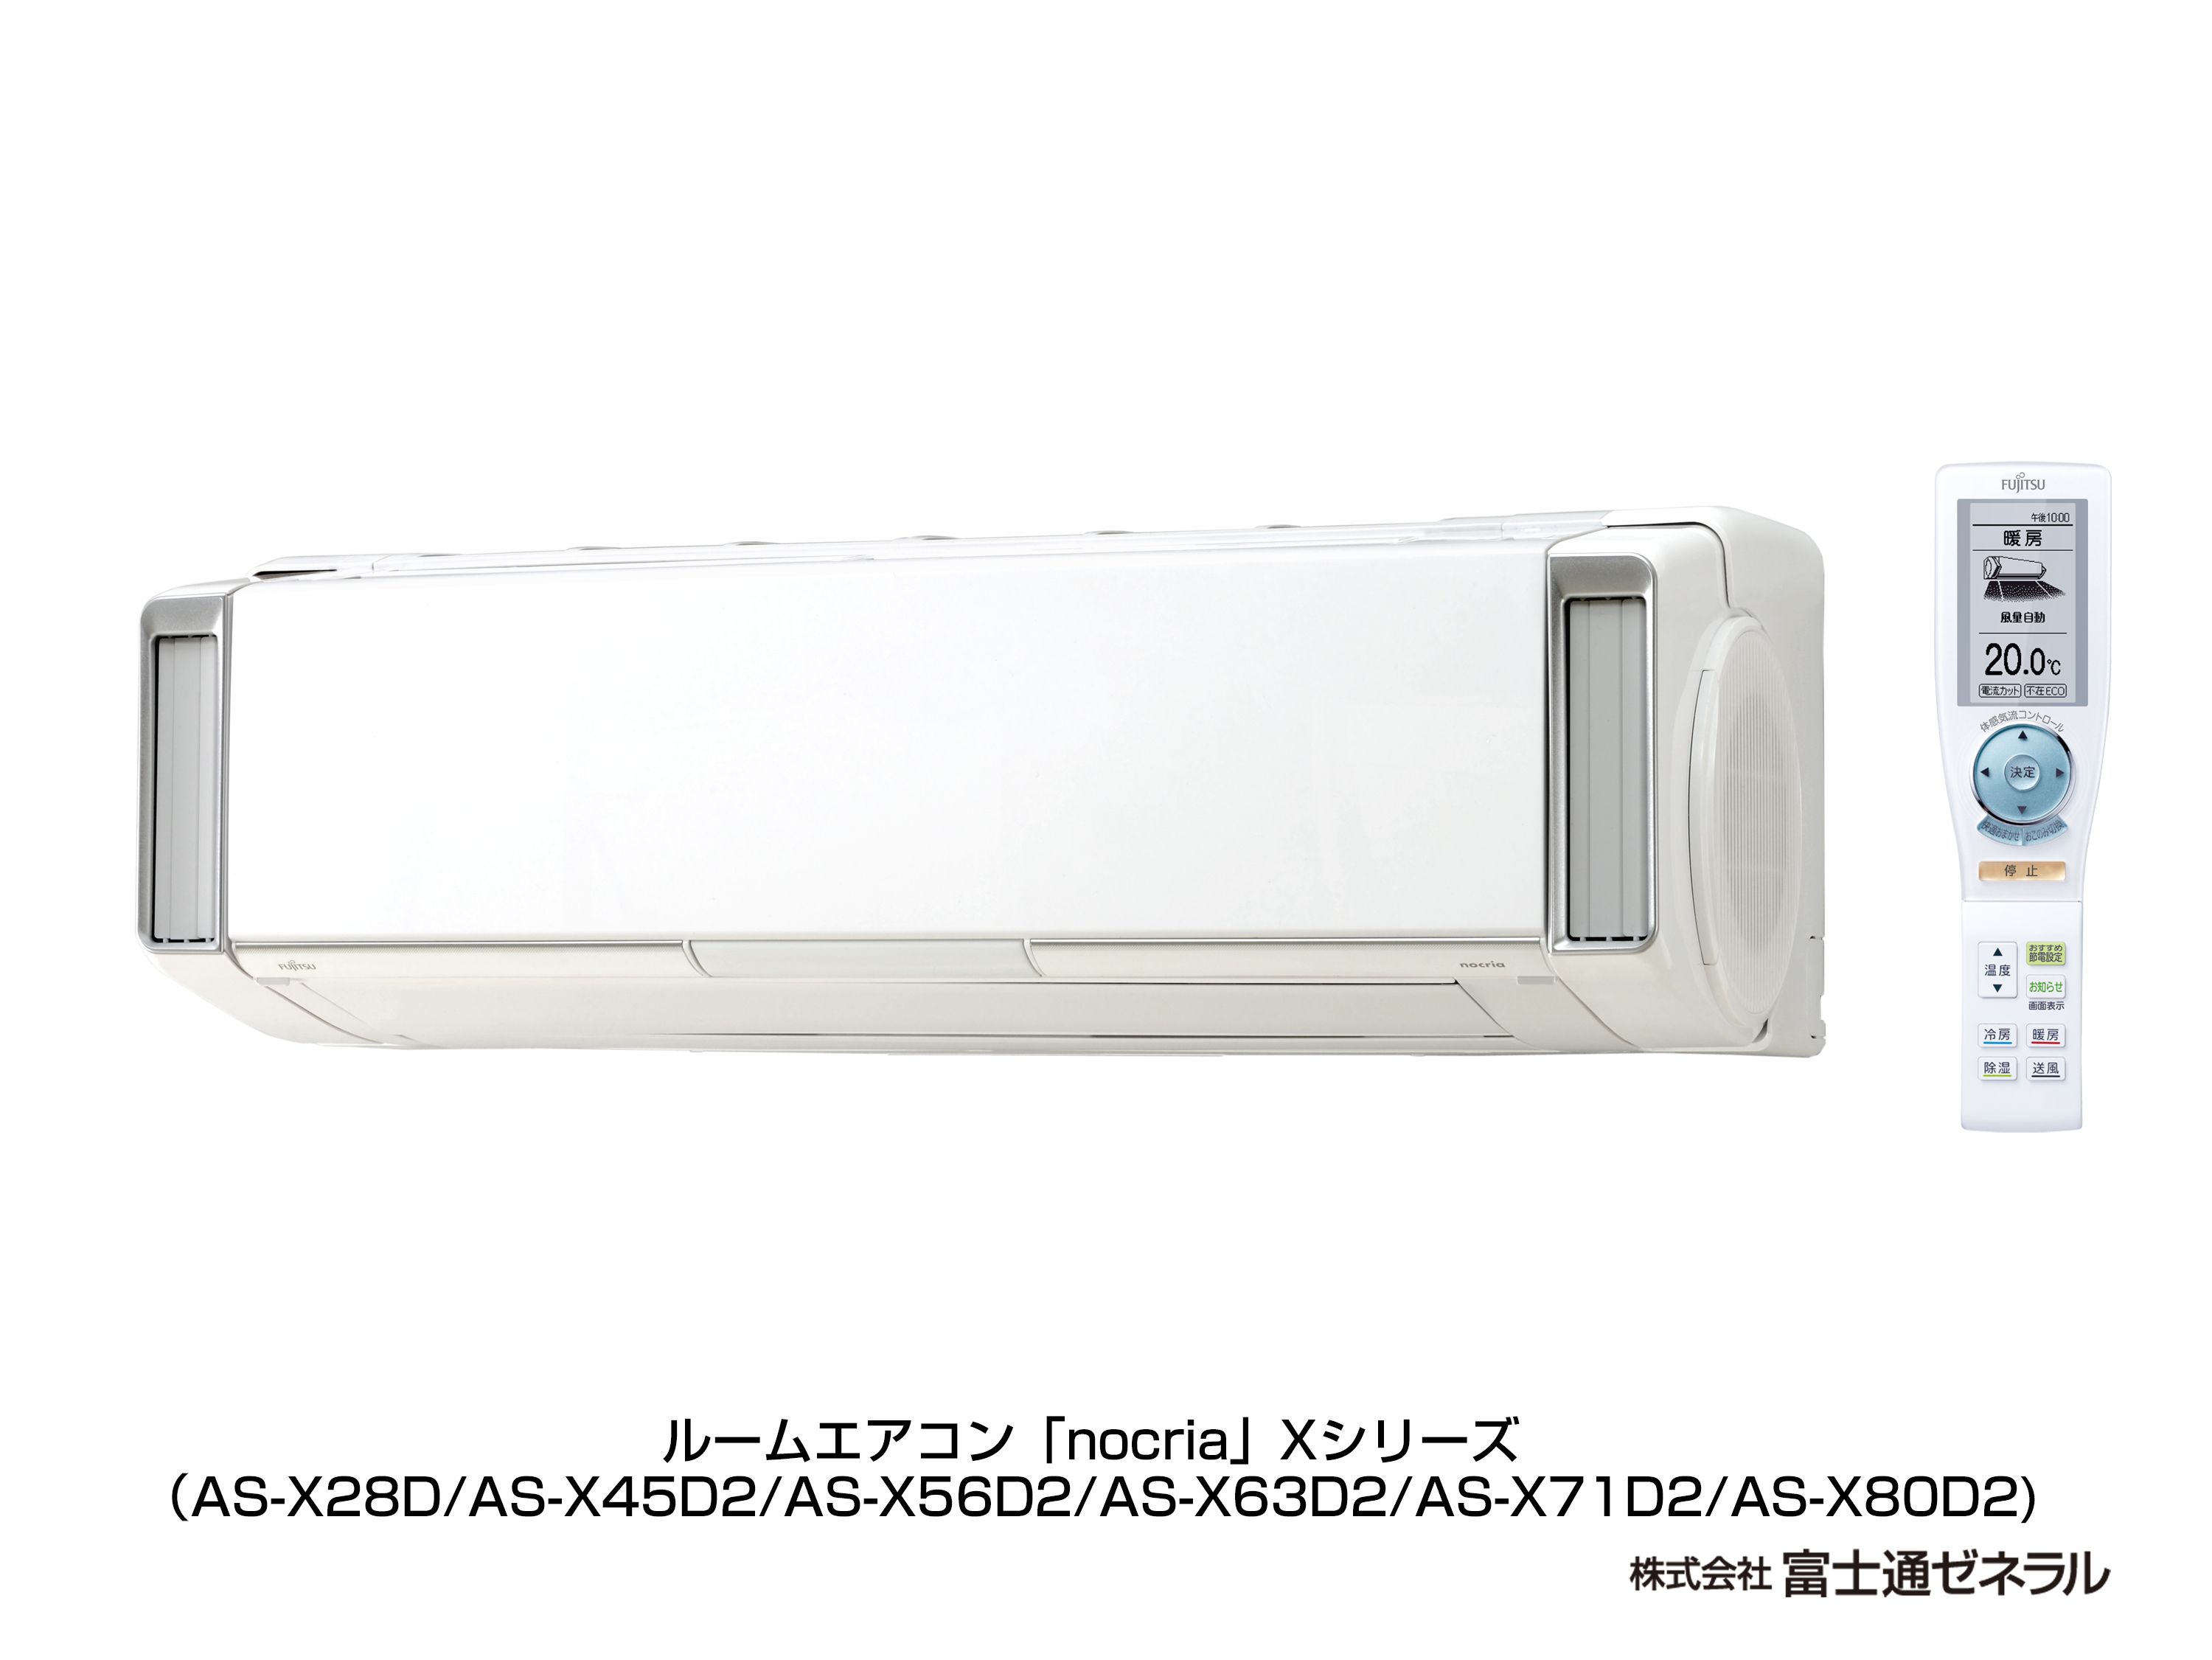 エアコン : AS-X71D2仕様詳細（2014年度「ノクリア」Xシリーズ 